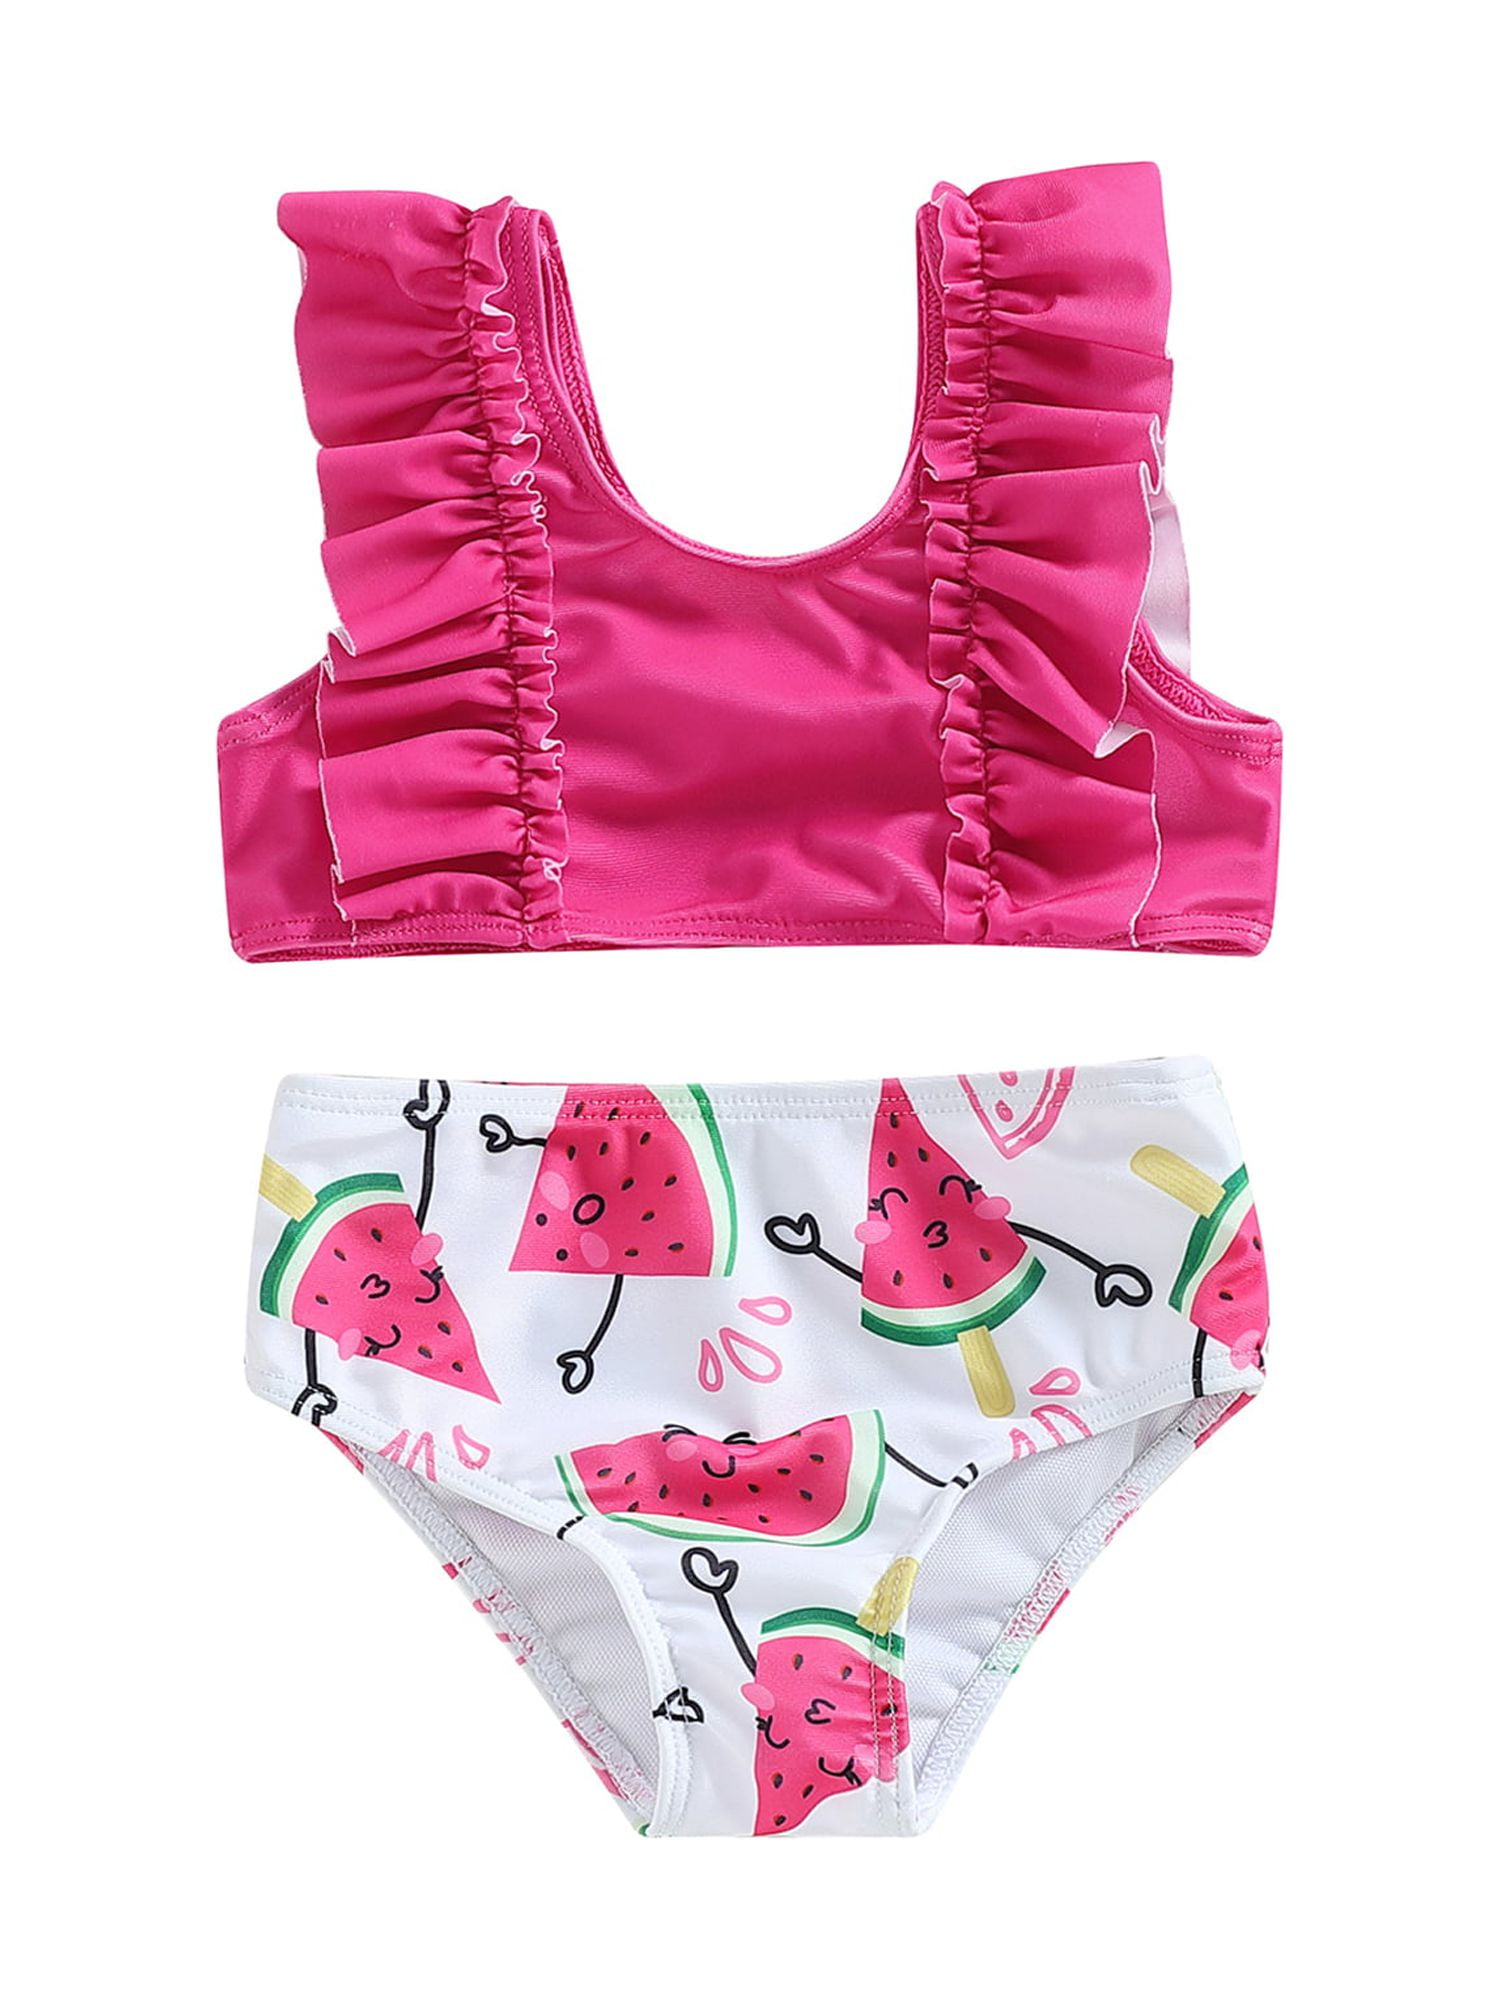 Bagilaanoe Little Girls Swimsuits 3 Piece Bikinis Set Sleeveless ...